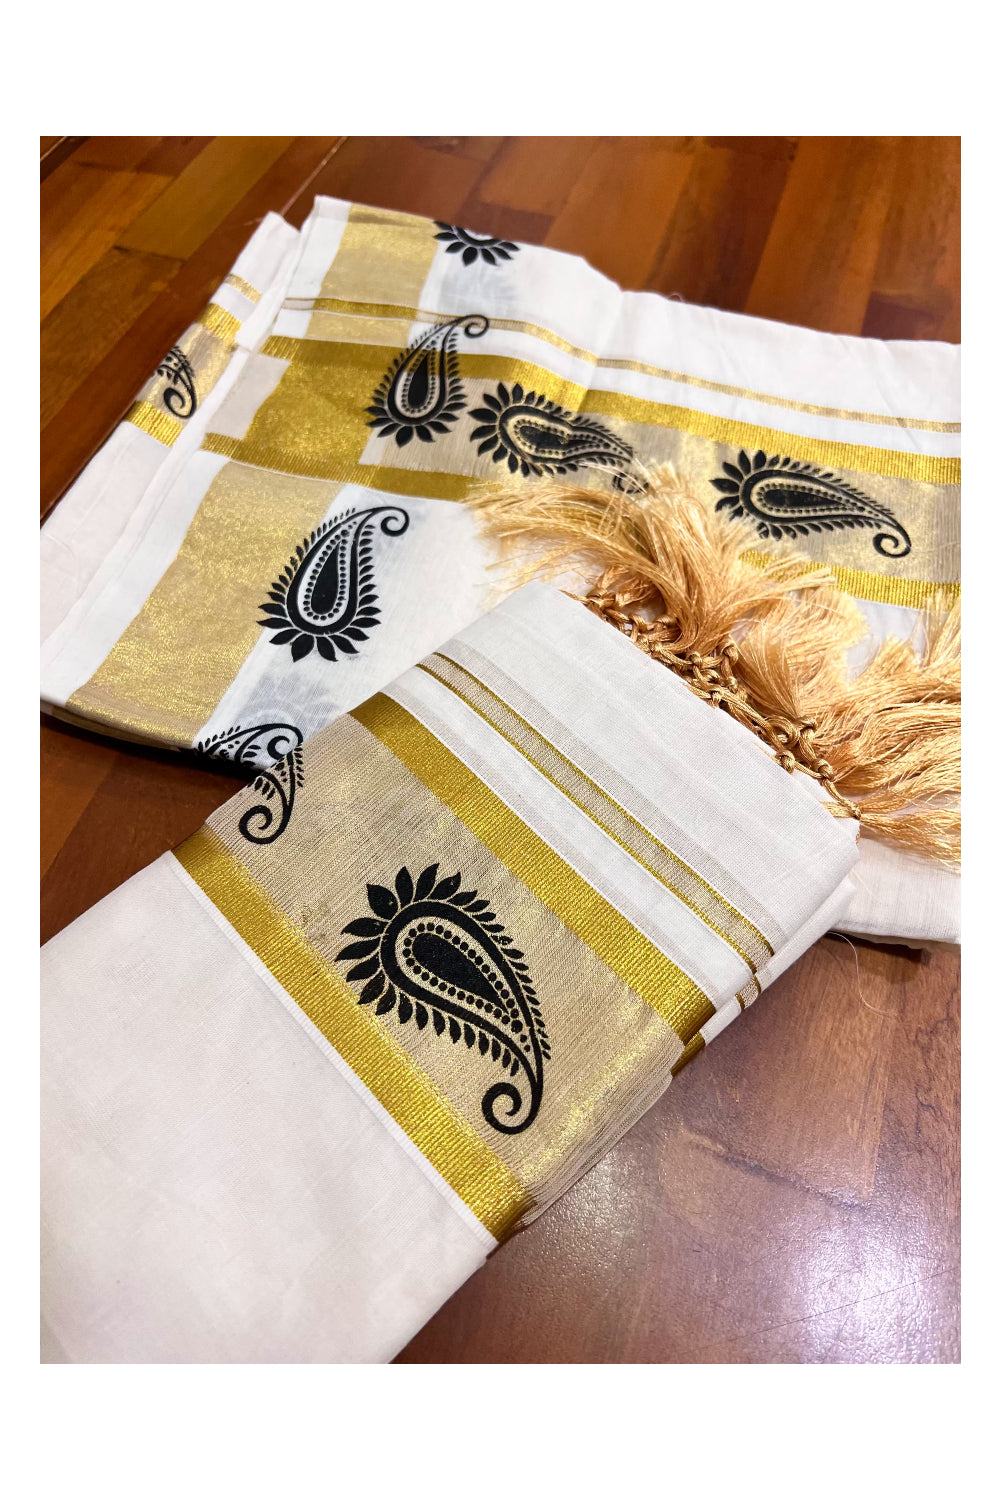 Kerala Cotton Single Set Mundu (Mundum Neriyathum) with Paisley Block Prints on Kasavu Border 2.80 Mtrs